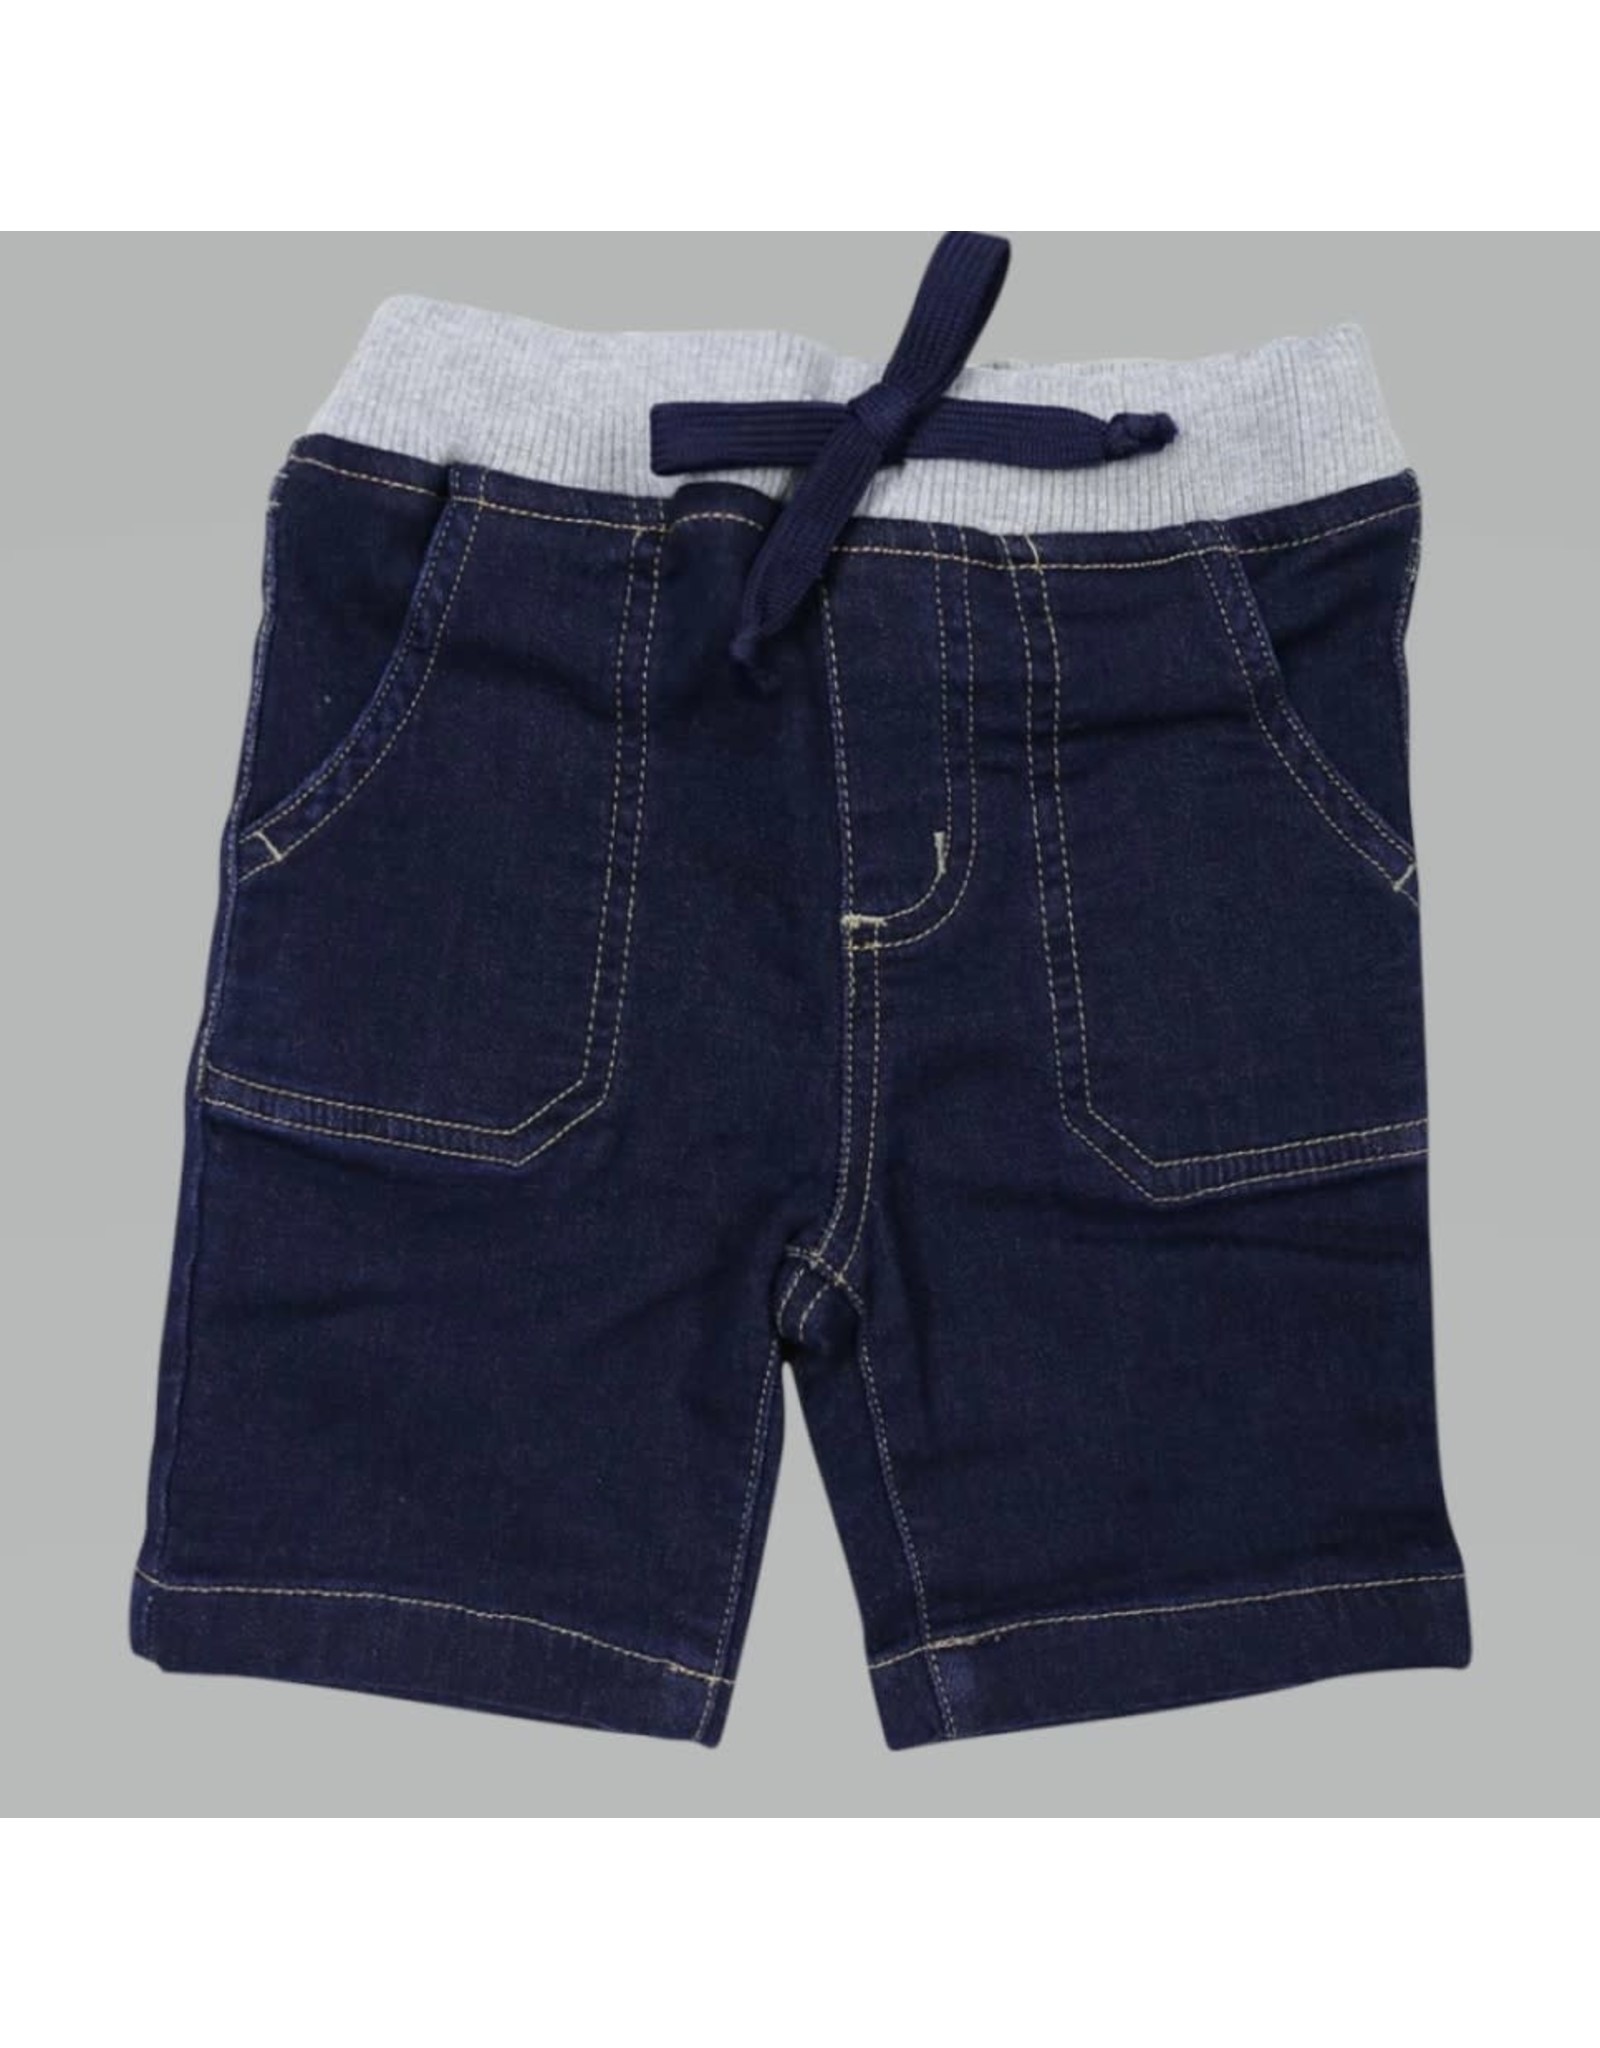 Korango Australia Denim Knit Shorts - Dark Navy